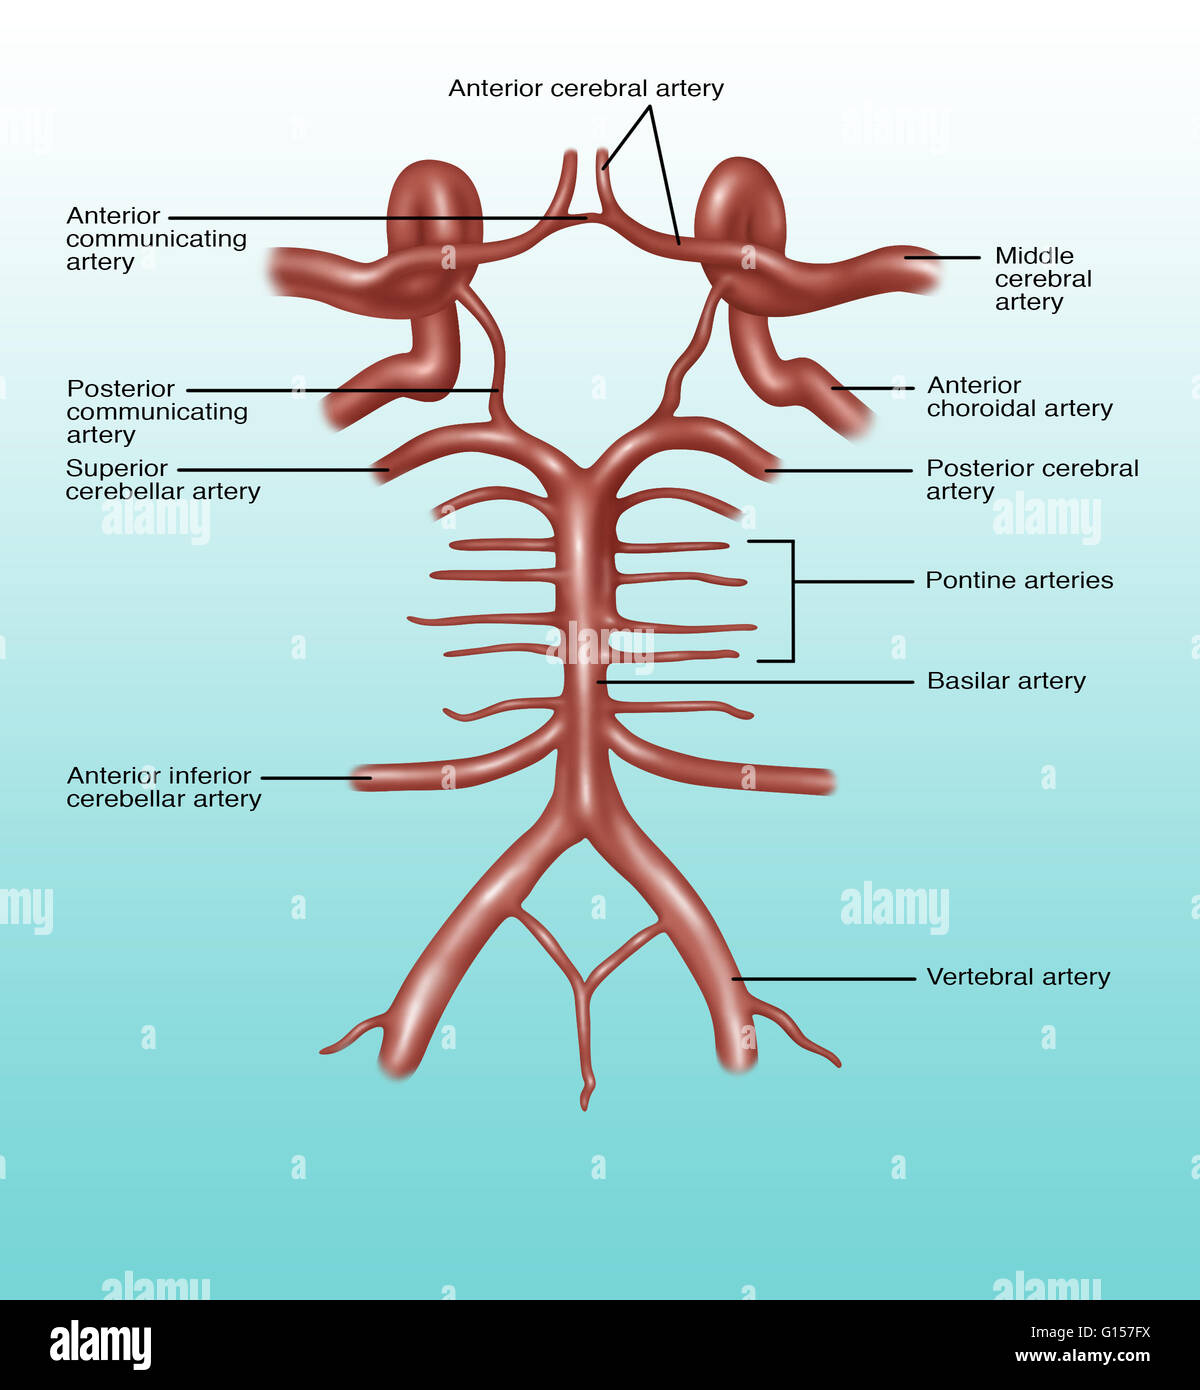 Illustrazione del circolo di Willis, un cerchio di arterie che forniscono sangue al cervello. Elencati in senso orario a partire da in alto al centro: anteriore arteria cerebrale, arteria cerebrale mediana anteriore nella arteria coroidale, posteriore arteria cerebrale, arterie pontine, b Foto Stock